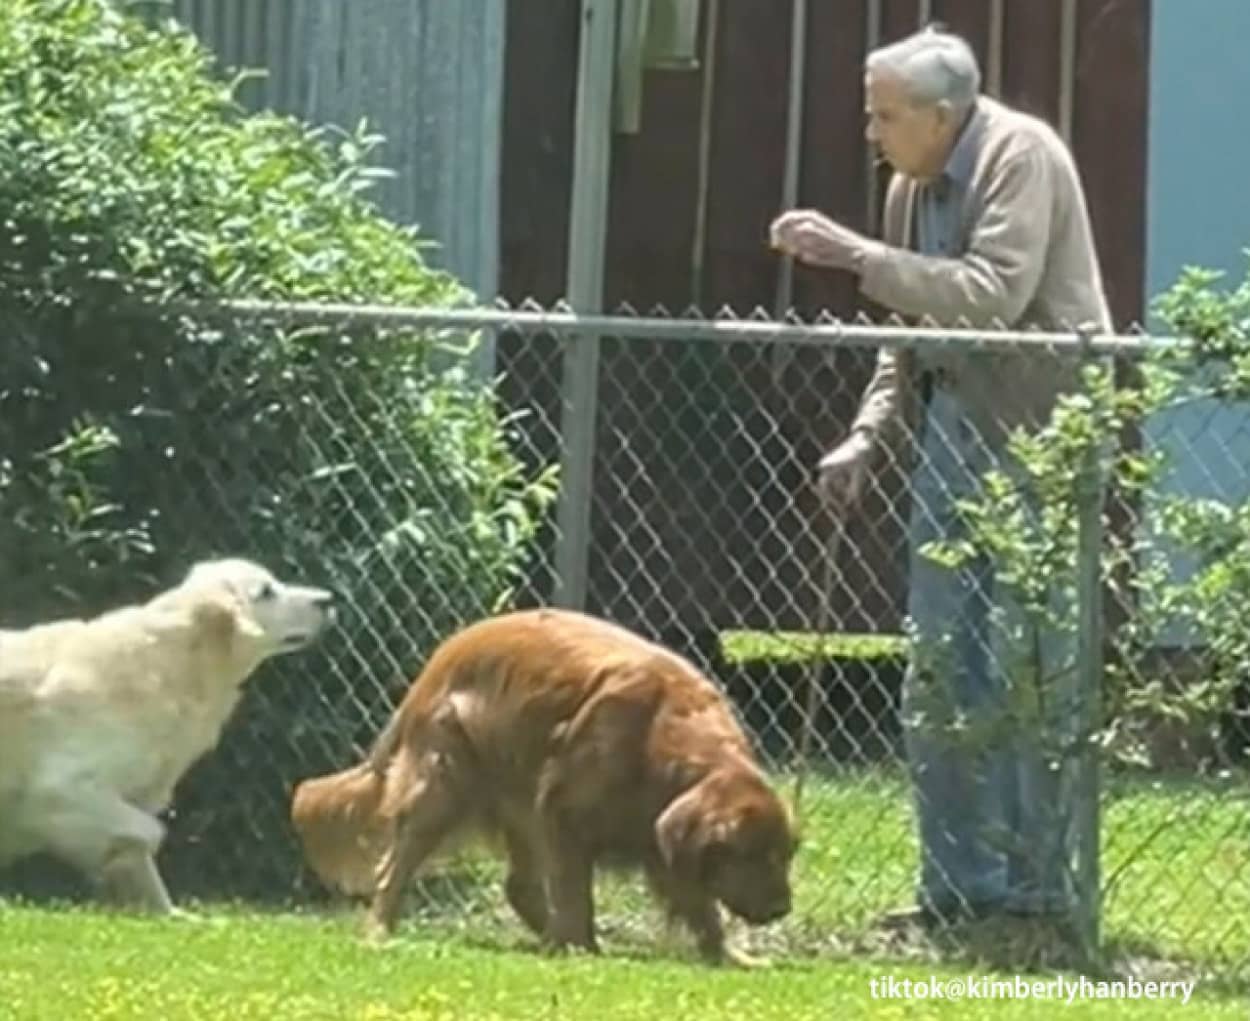 94歳のおじいさんの生きがいは隣人の家の犬と触れ合うこと